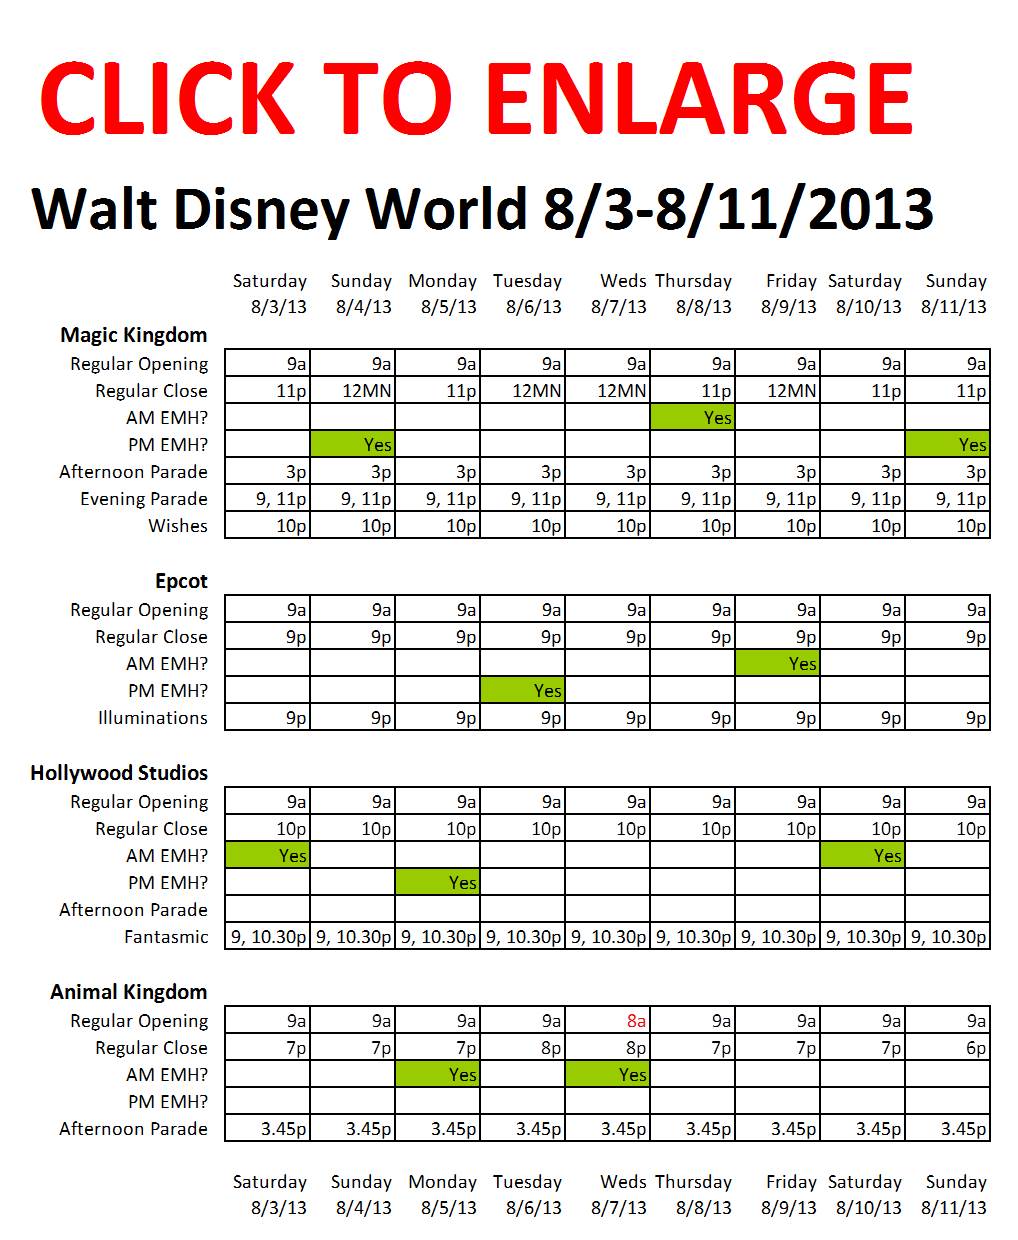 Next Week (August 3 to August 11, 2013) at Walt Disney World